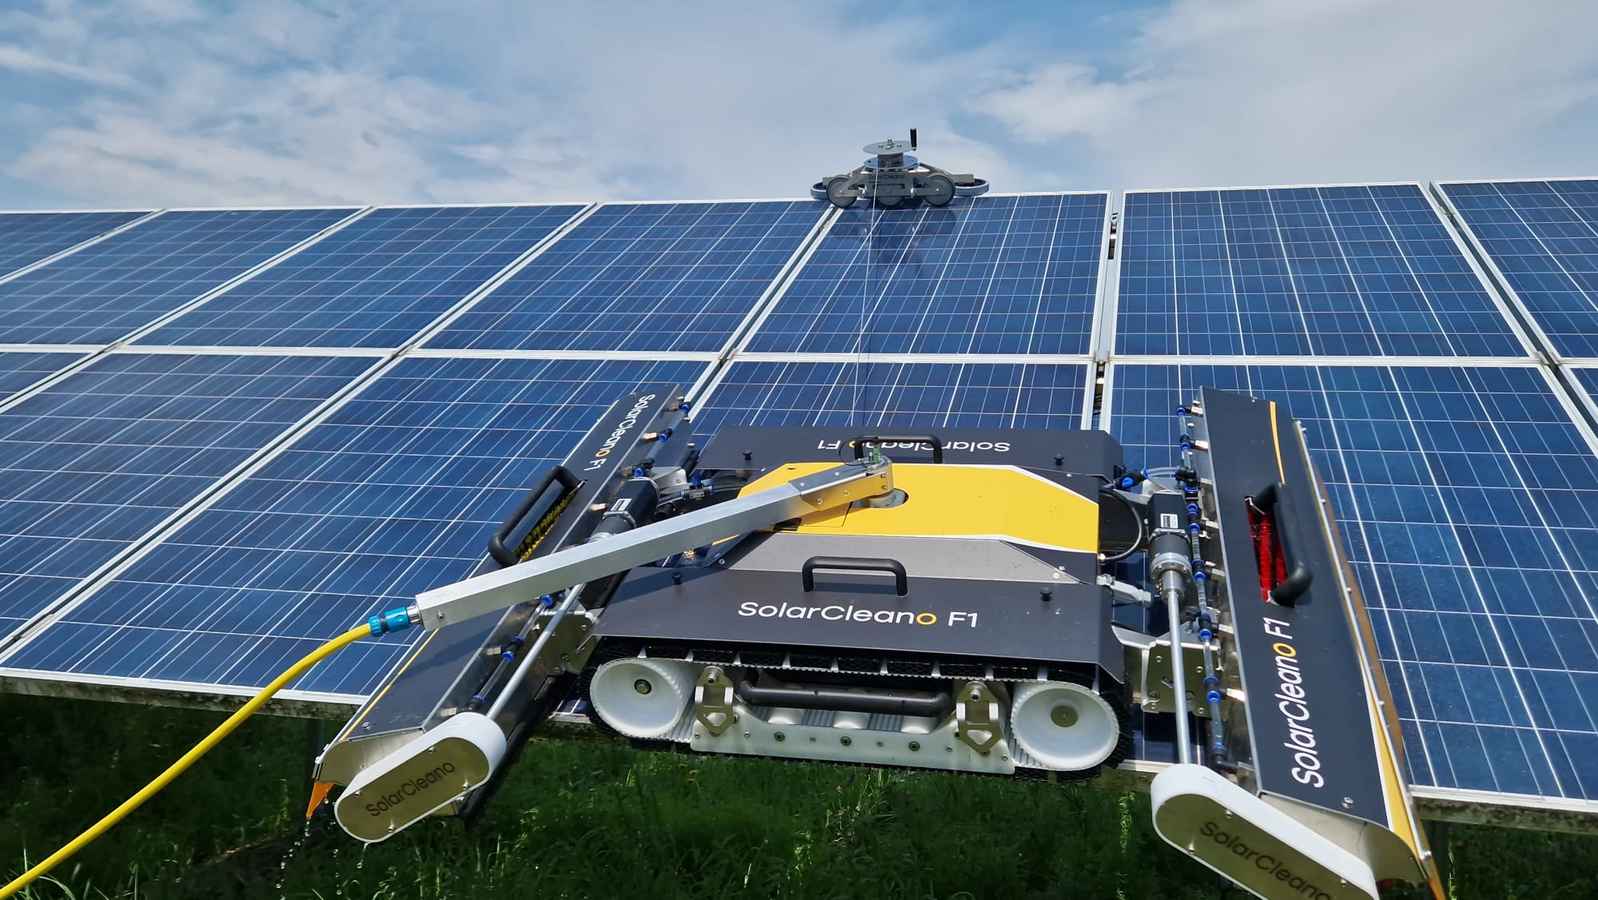 Spalarea robotizata a panourilor solare